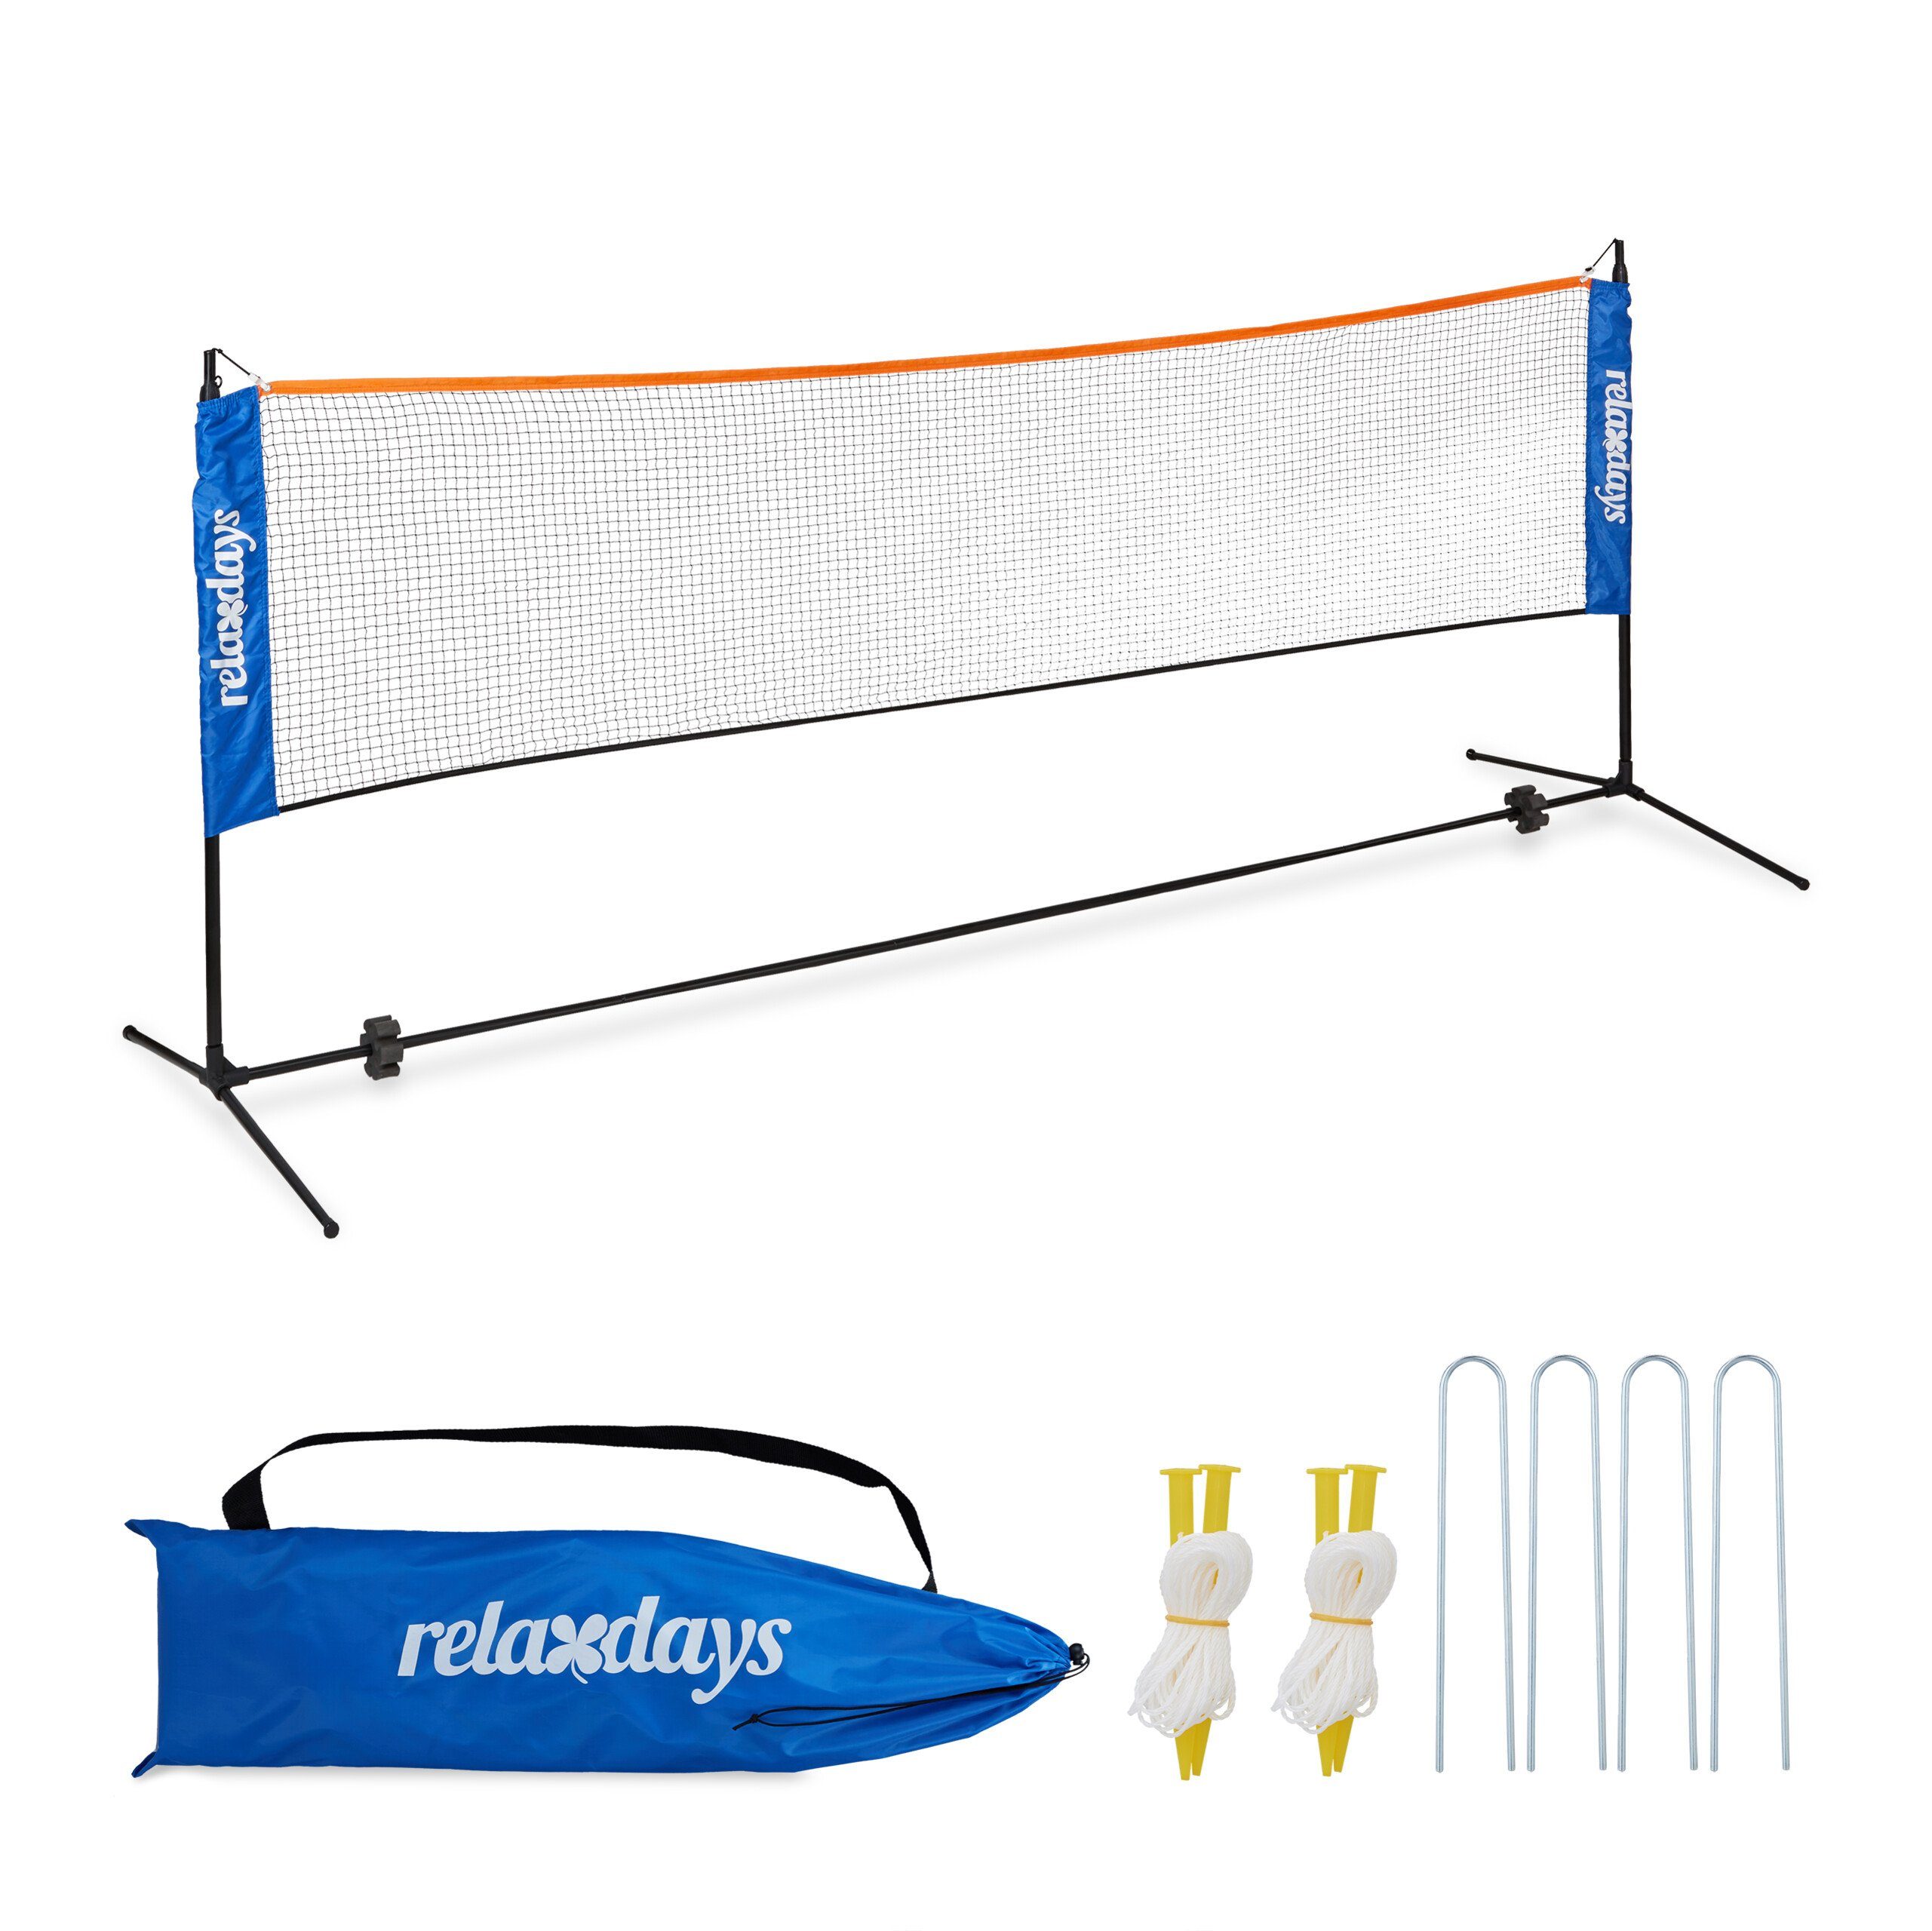 relaxdays Badmintonnetz Höhenverstellbares Badminton Netz